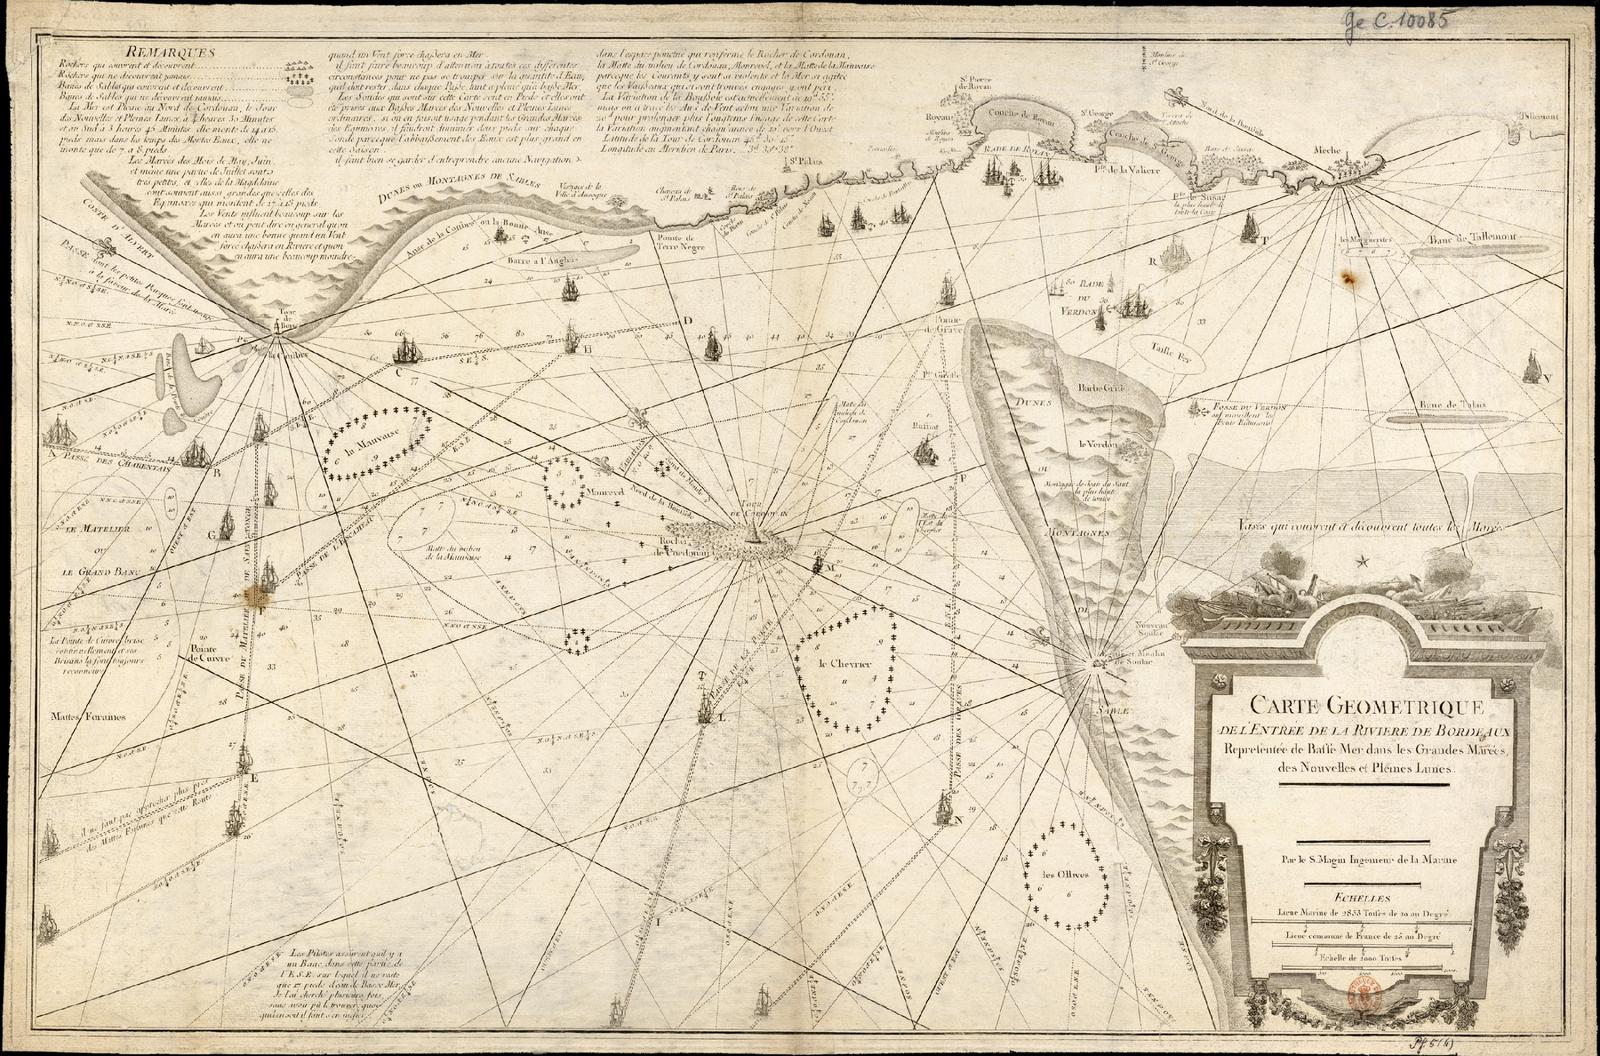 Carte géométrique de l'entrée de la Gironde, 1757